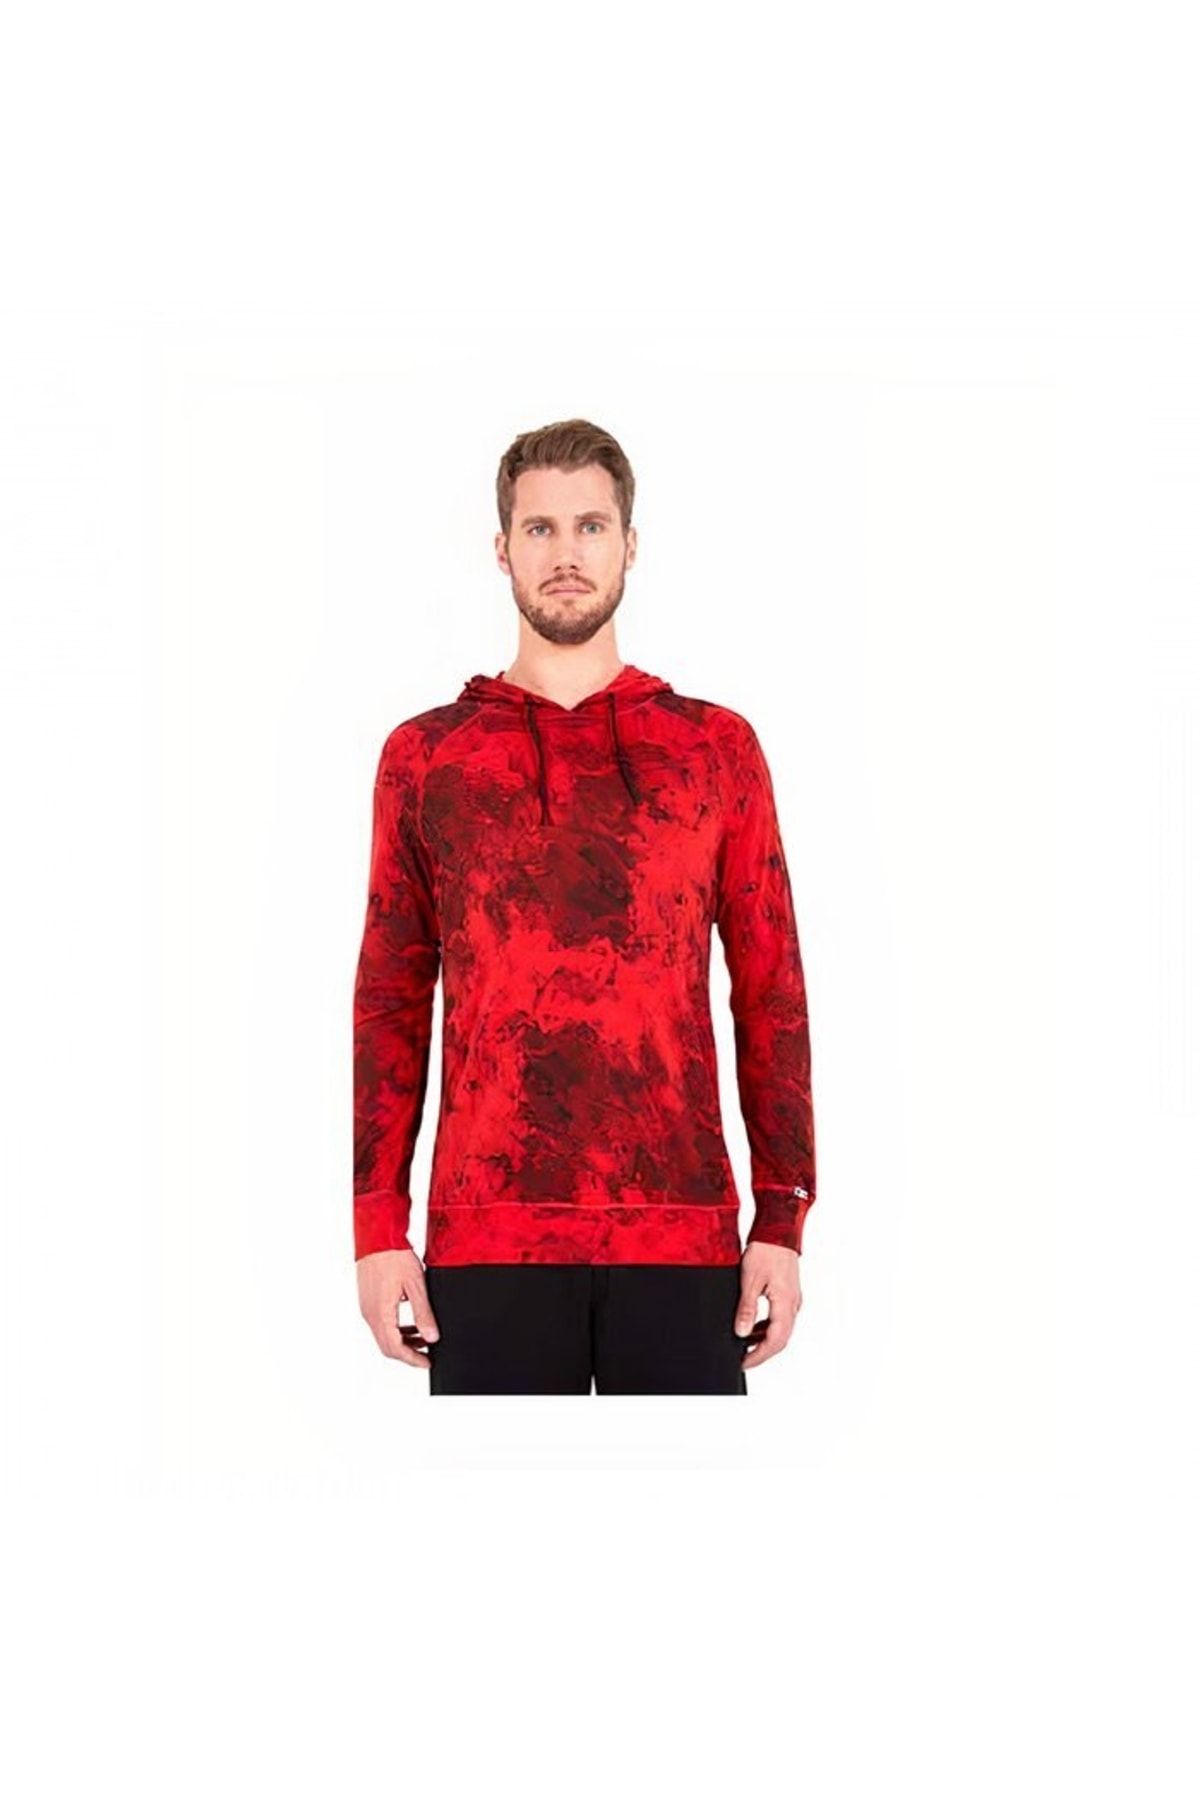 Blackspade Termal Sweatshirt 2. Seviye Kırmızı Xl